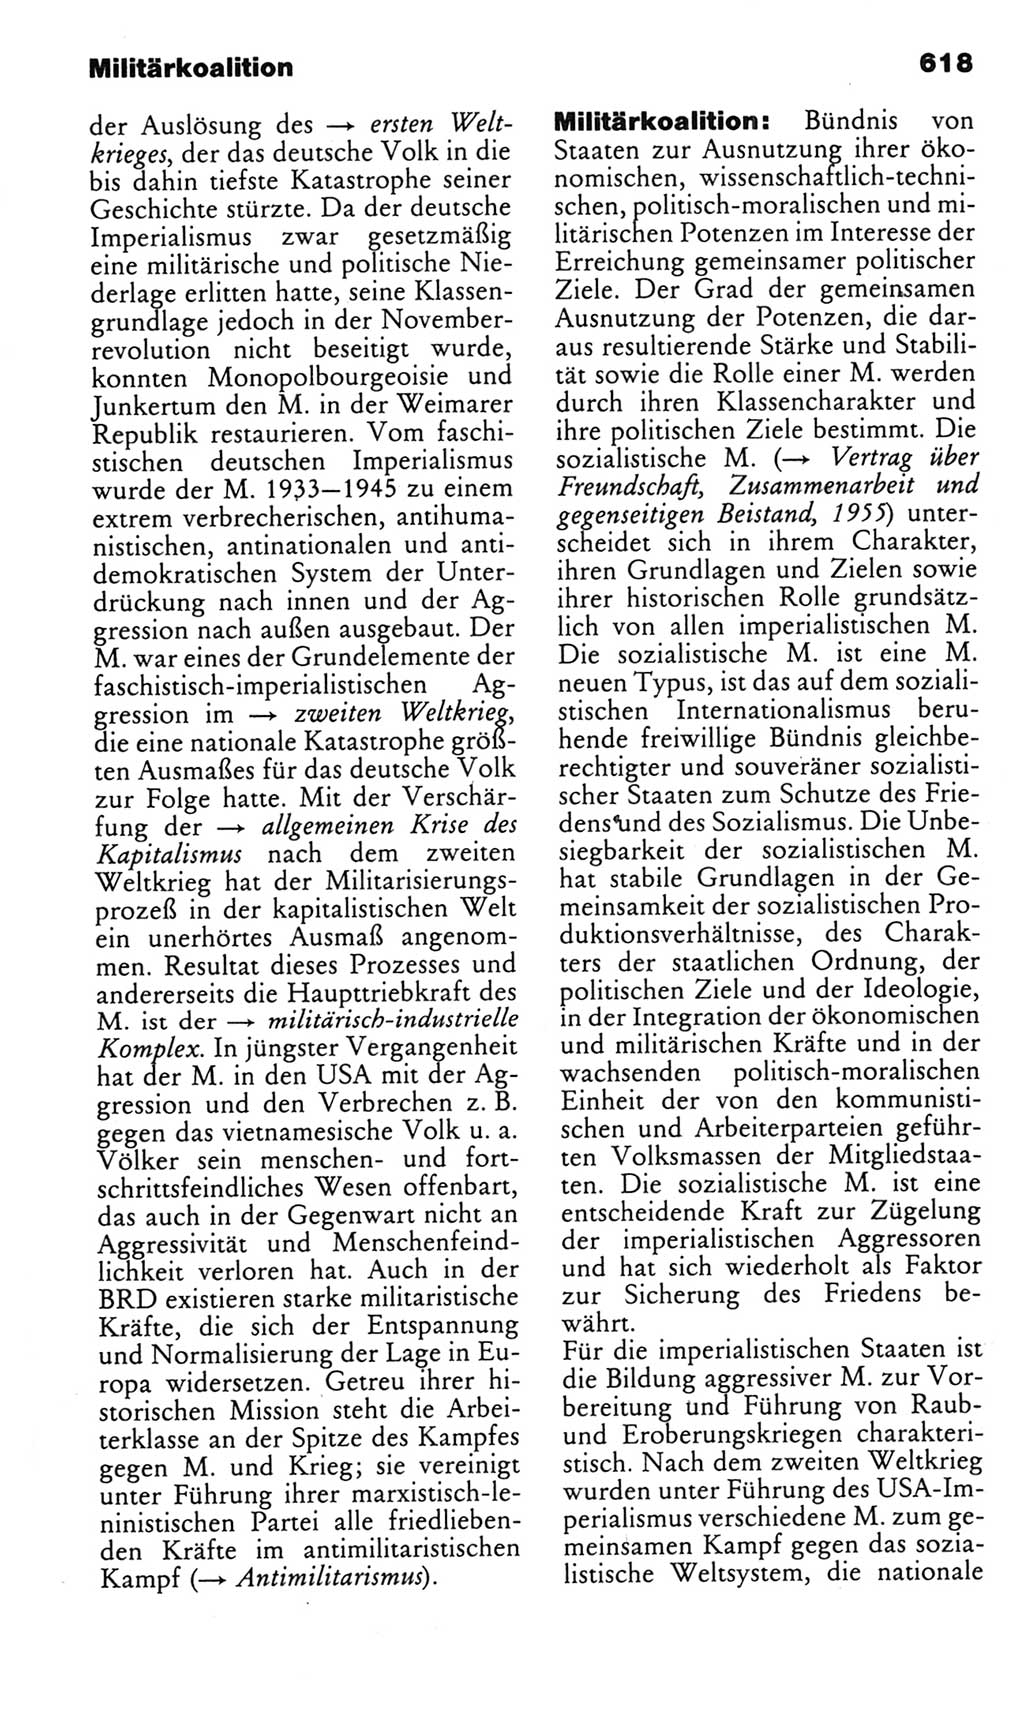 Kleines politisches Wörterbuch [Deutsche Demokratische Republik (DDR)] 1985, Seite 618 (Kl. pol. Wb. DDR 1985, S. 618)